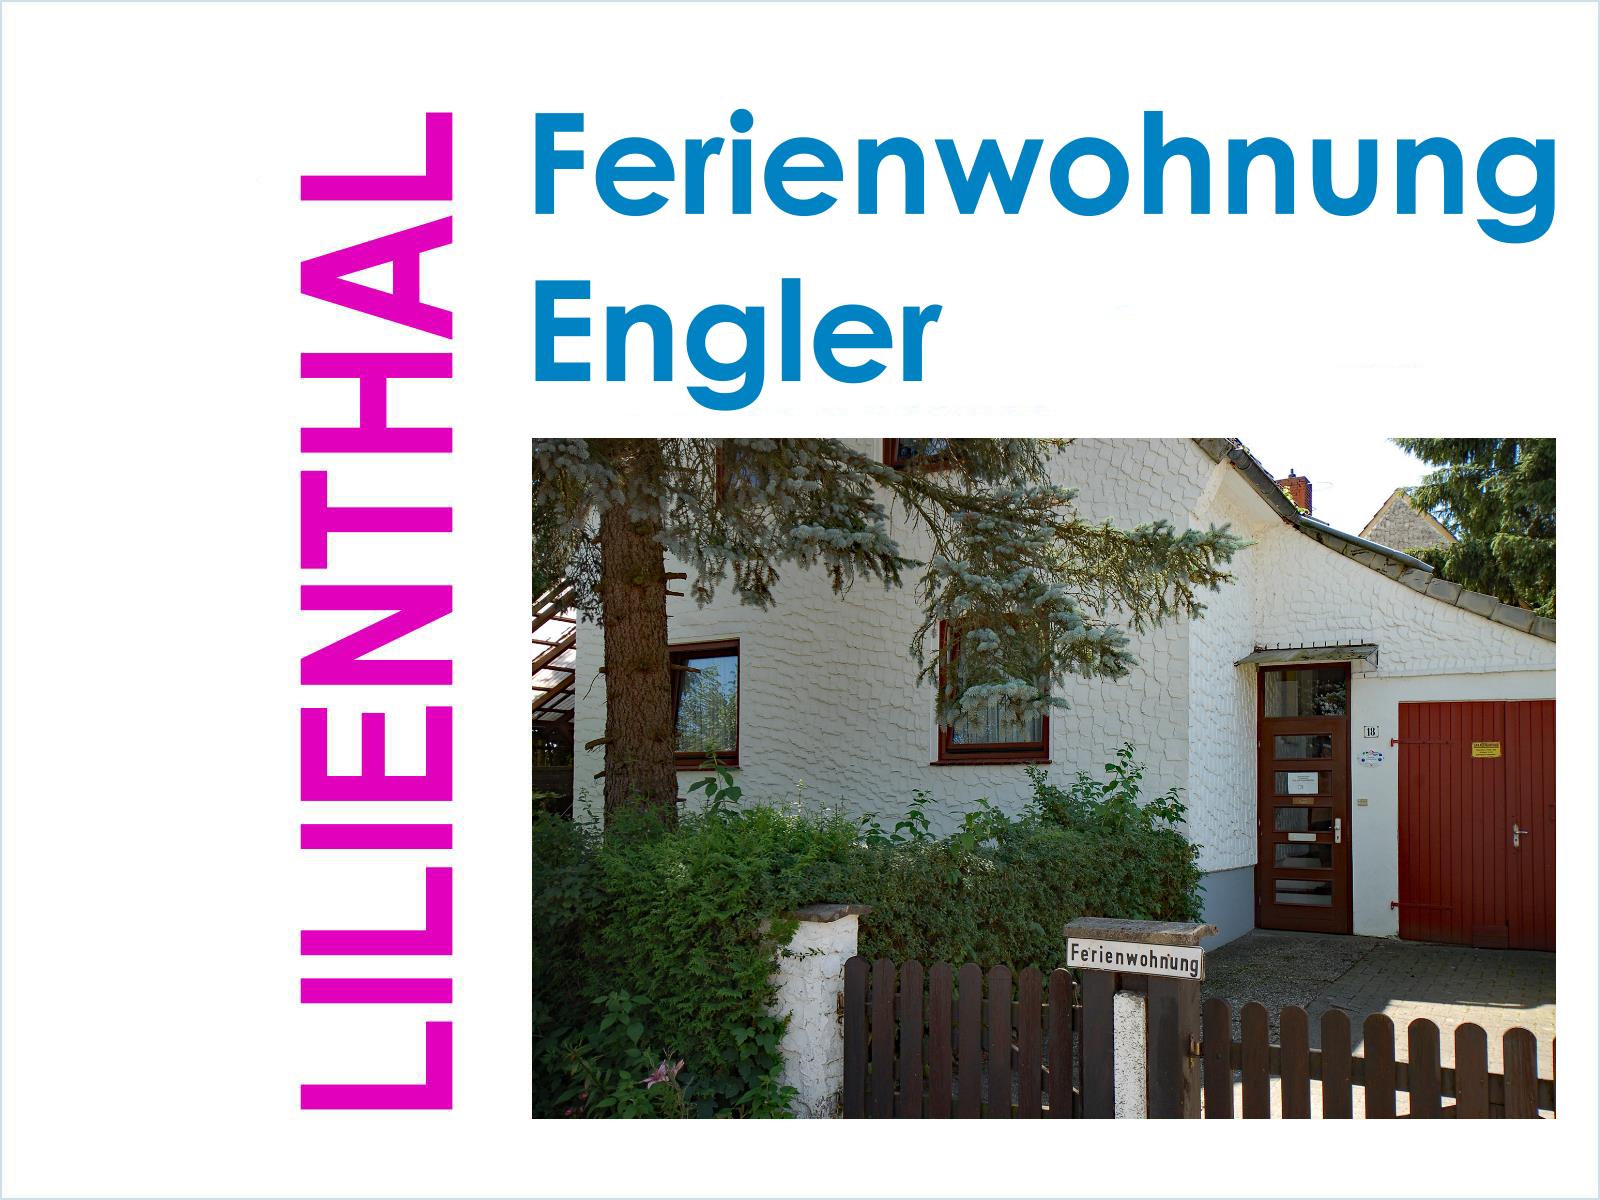 Ferienwohnung Engler in Lilienthal bei Bremen